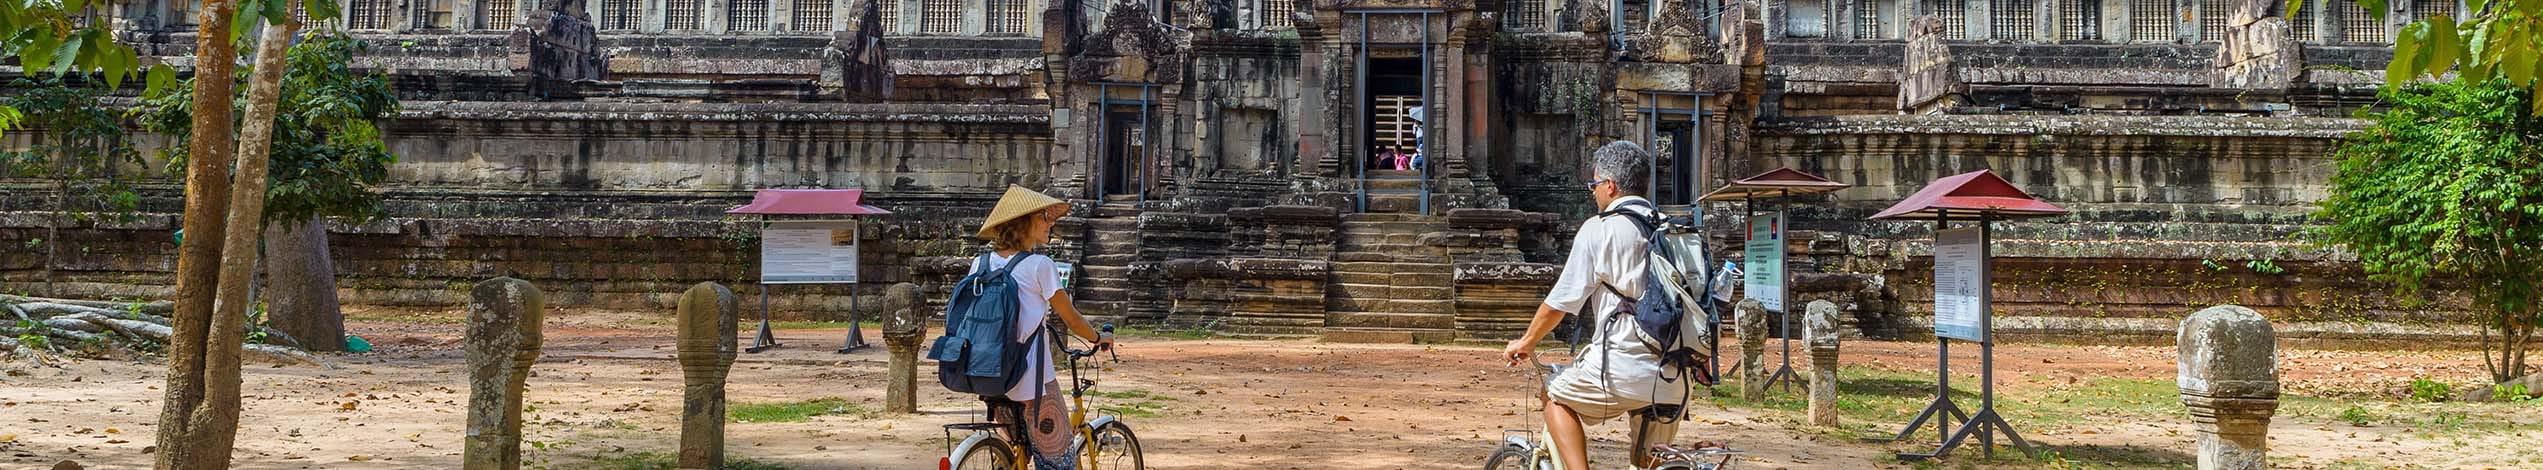 Aktiv ferie i Cambodja